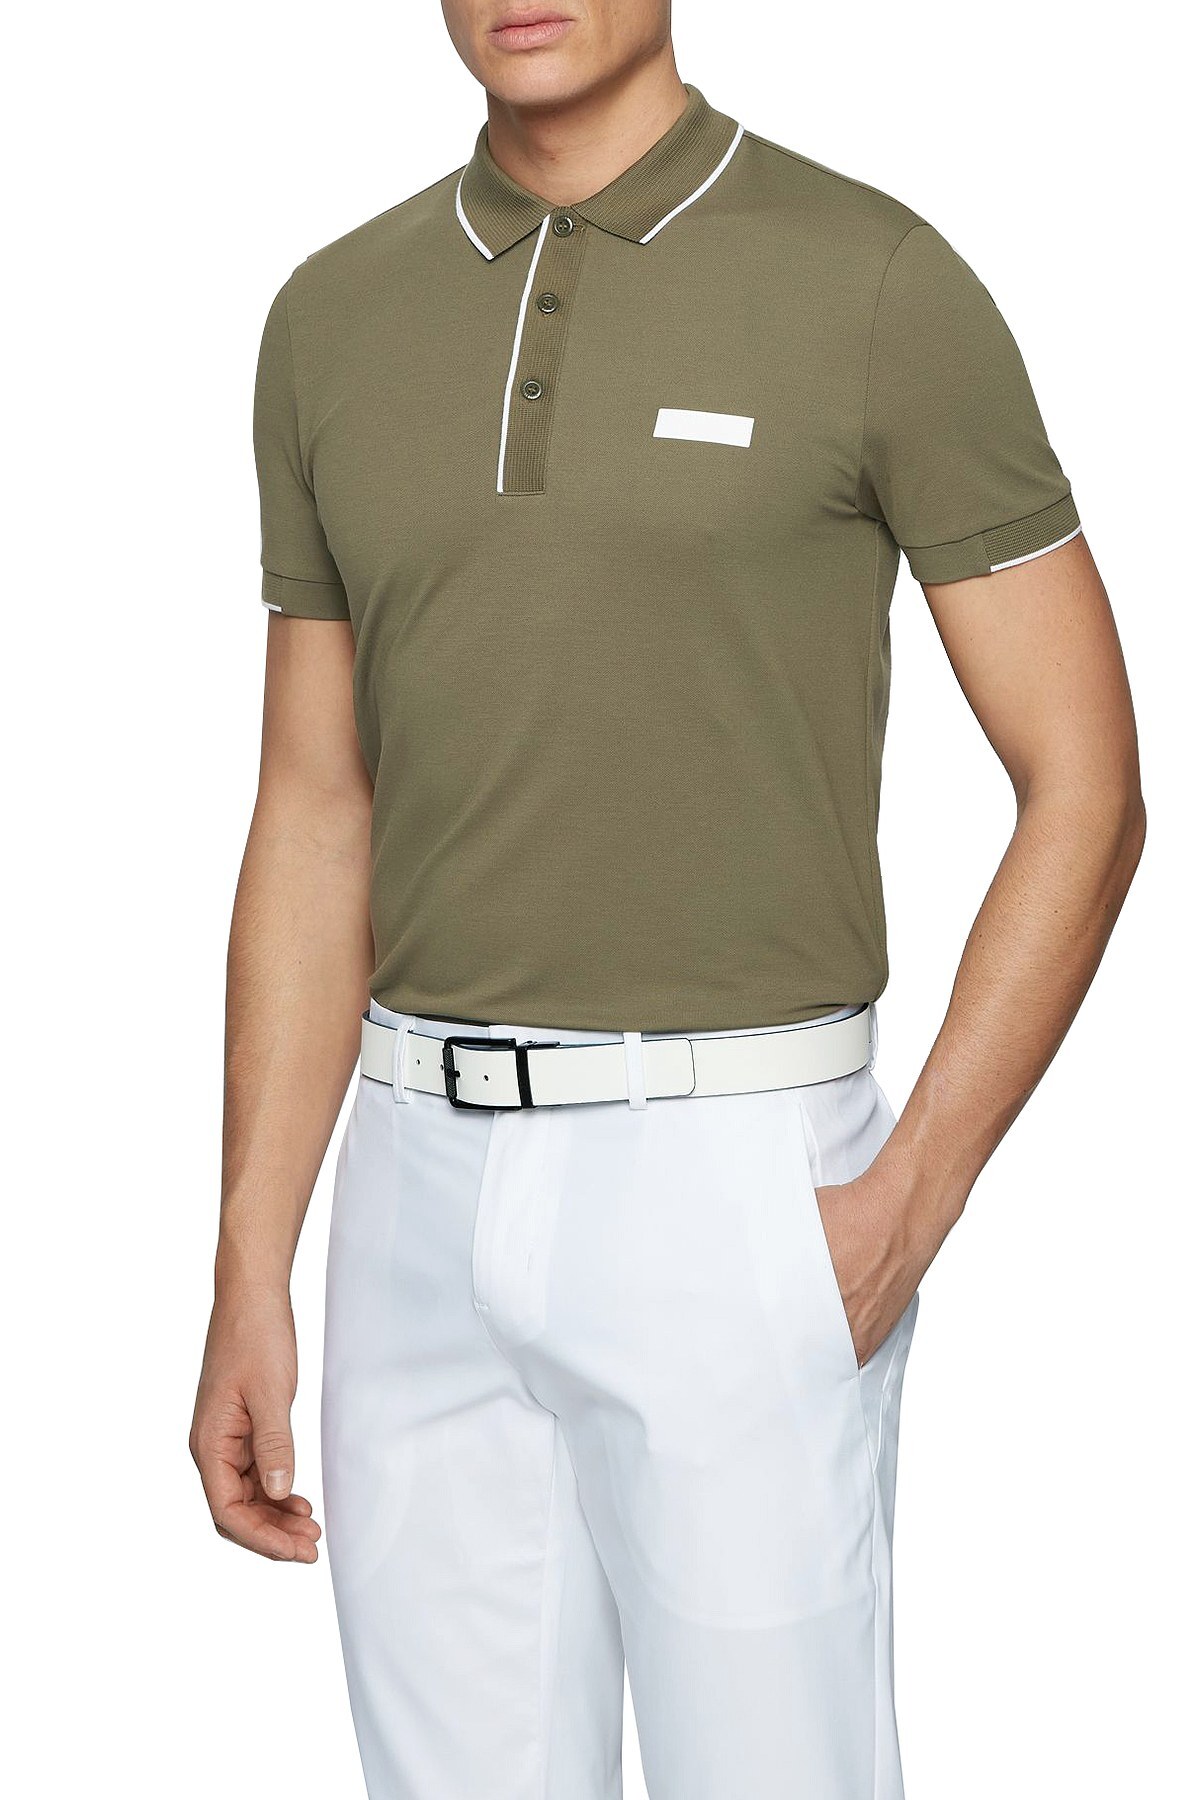 Hugo Boss Pamuklu Slim Fit T Shirt Erkek Polo 50448594 315 HAKİ